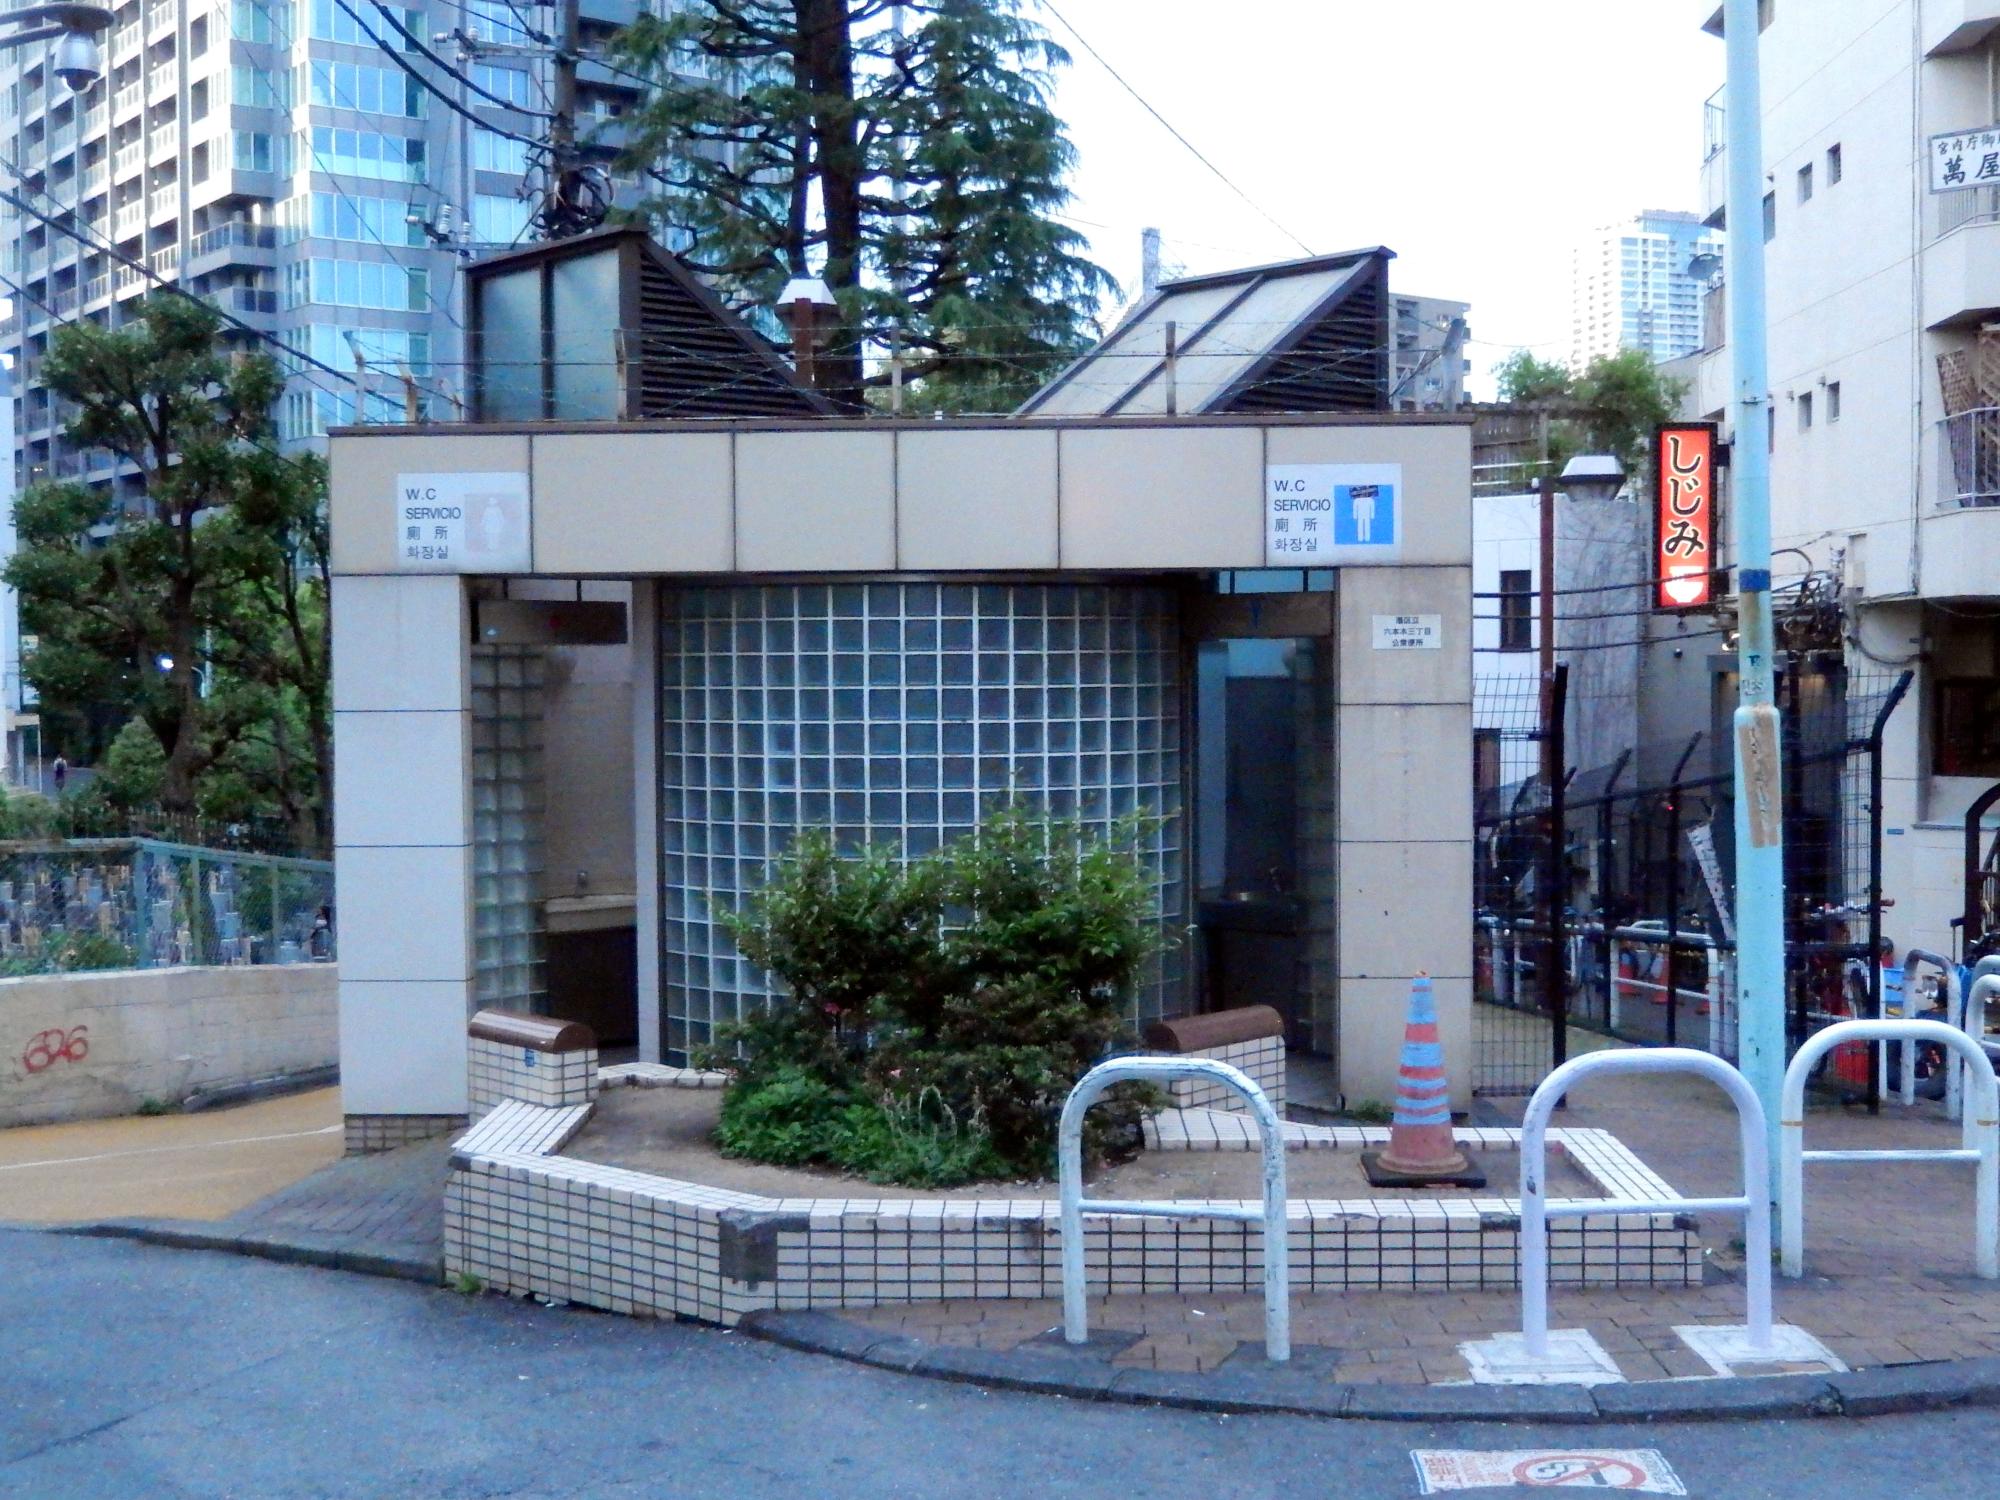 Tokyo (2016) - Public Restroom